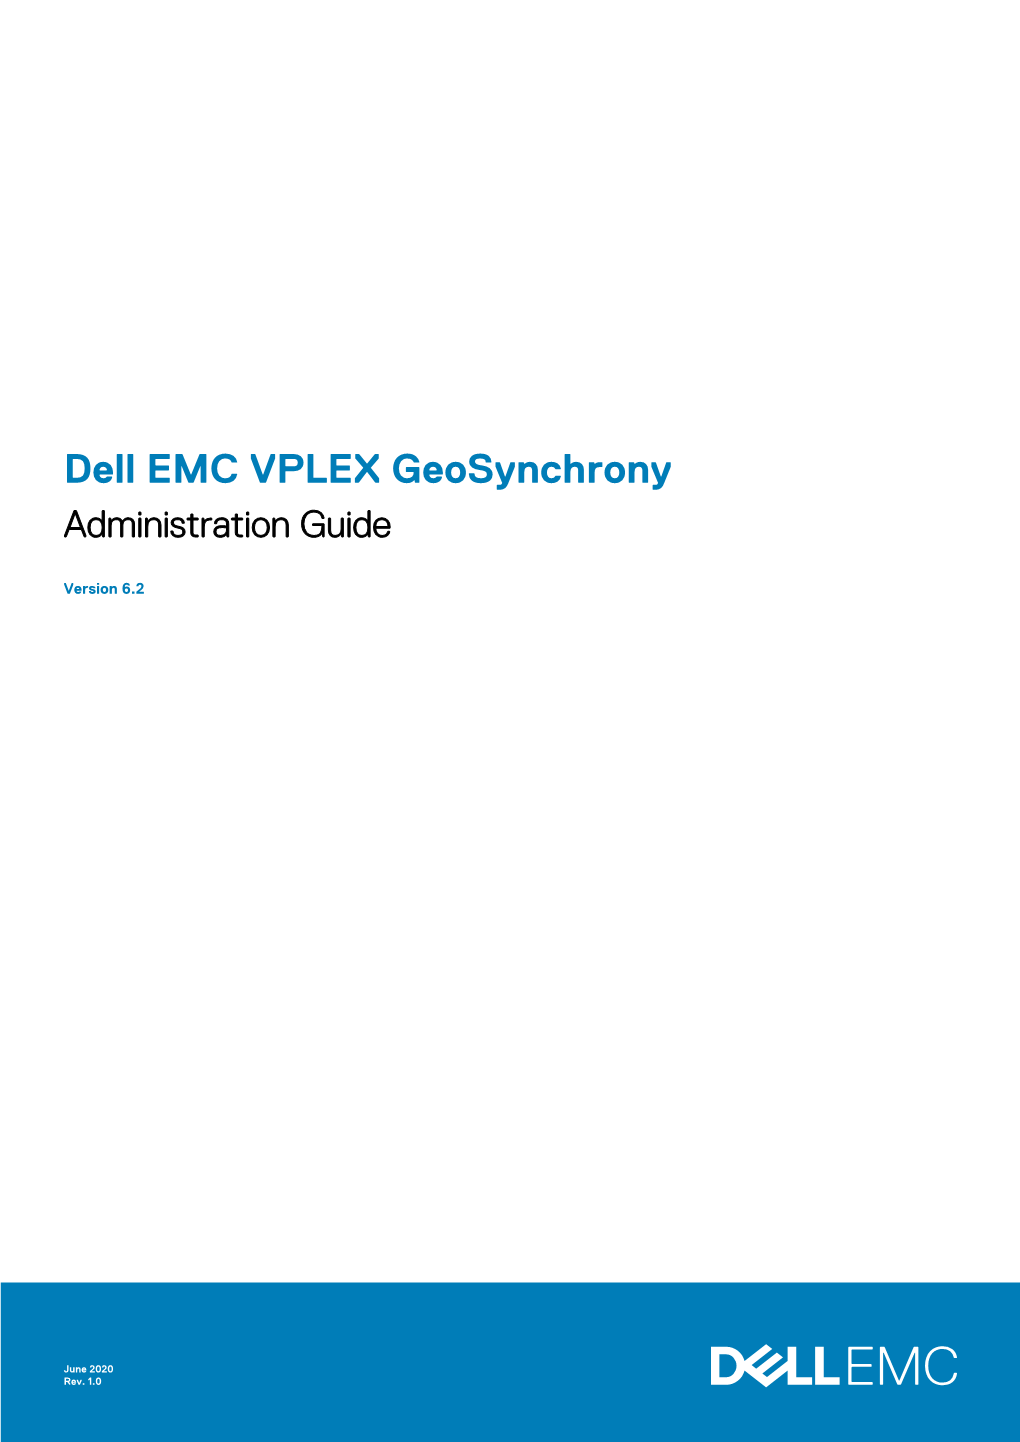 Dell EMC VPLEX Geosynchrony Administration Guide